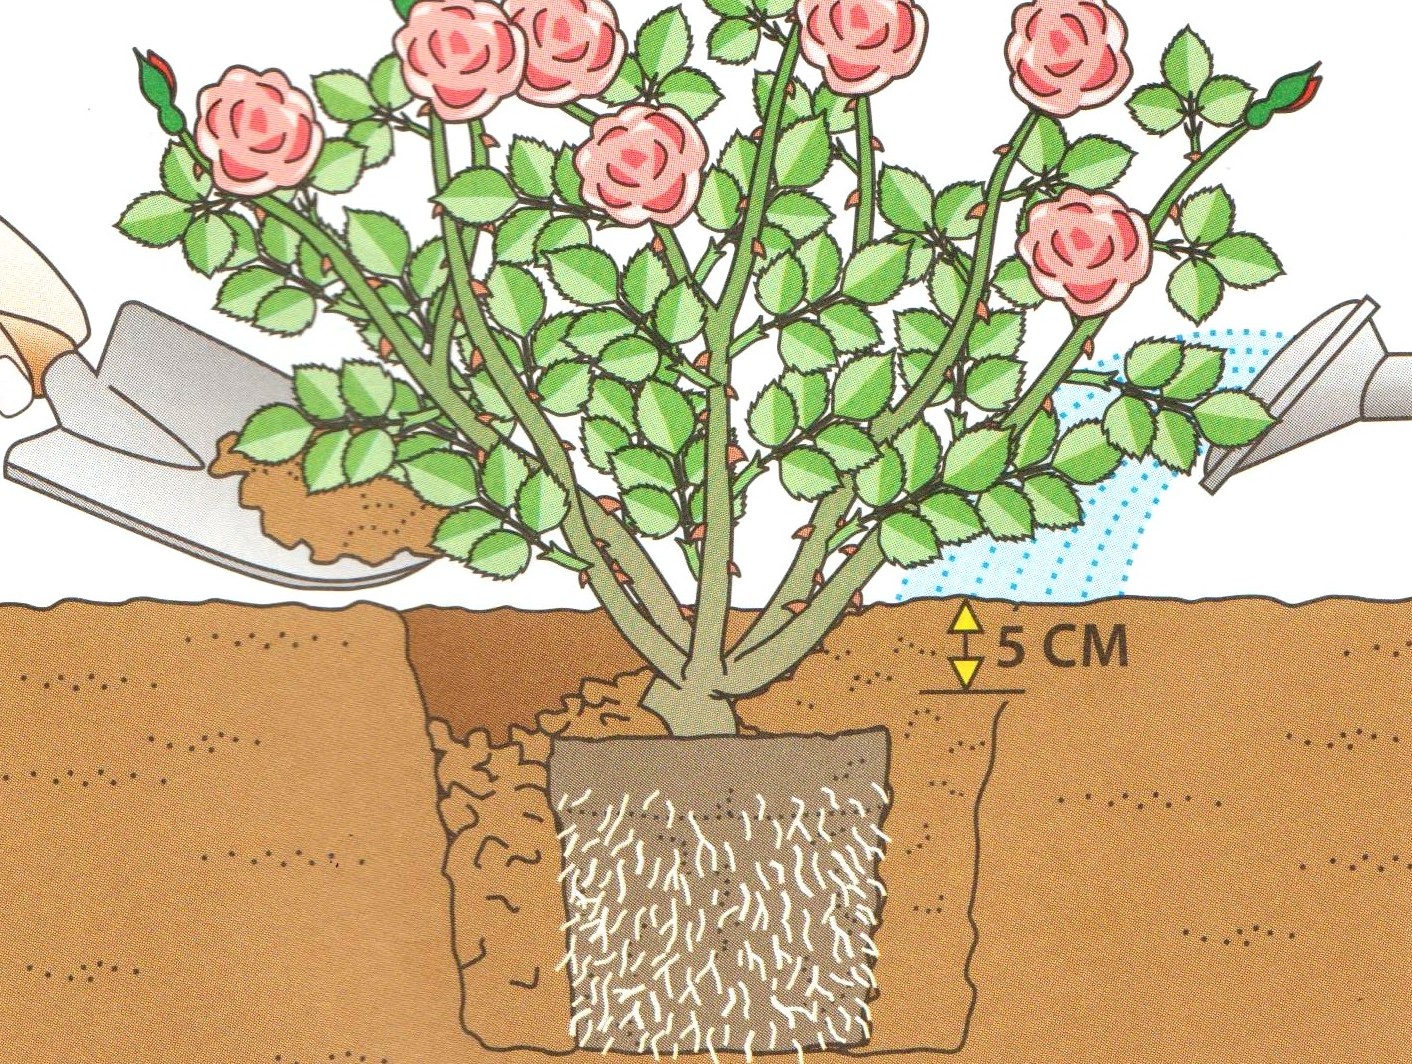 Посадить саженец розы в грунт. Посадка плетистой розы весной. Саженец плетистой розы. Высадка роз в грунт весной.